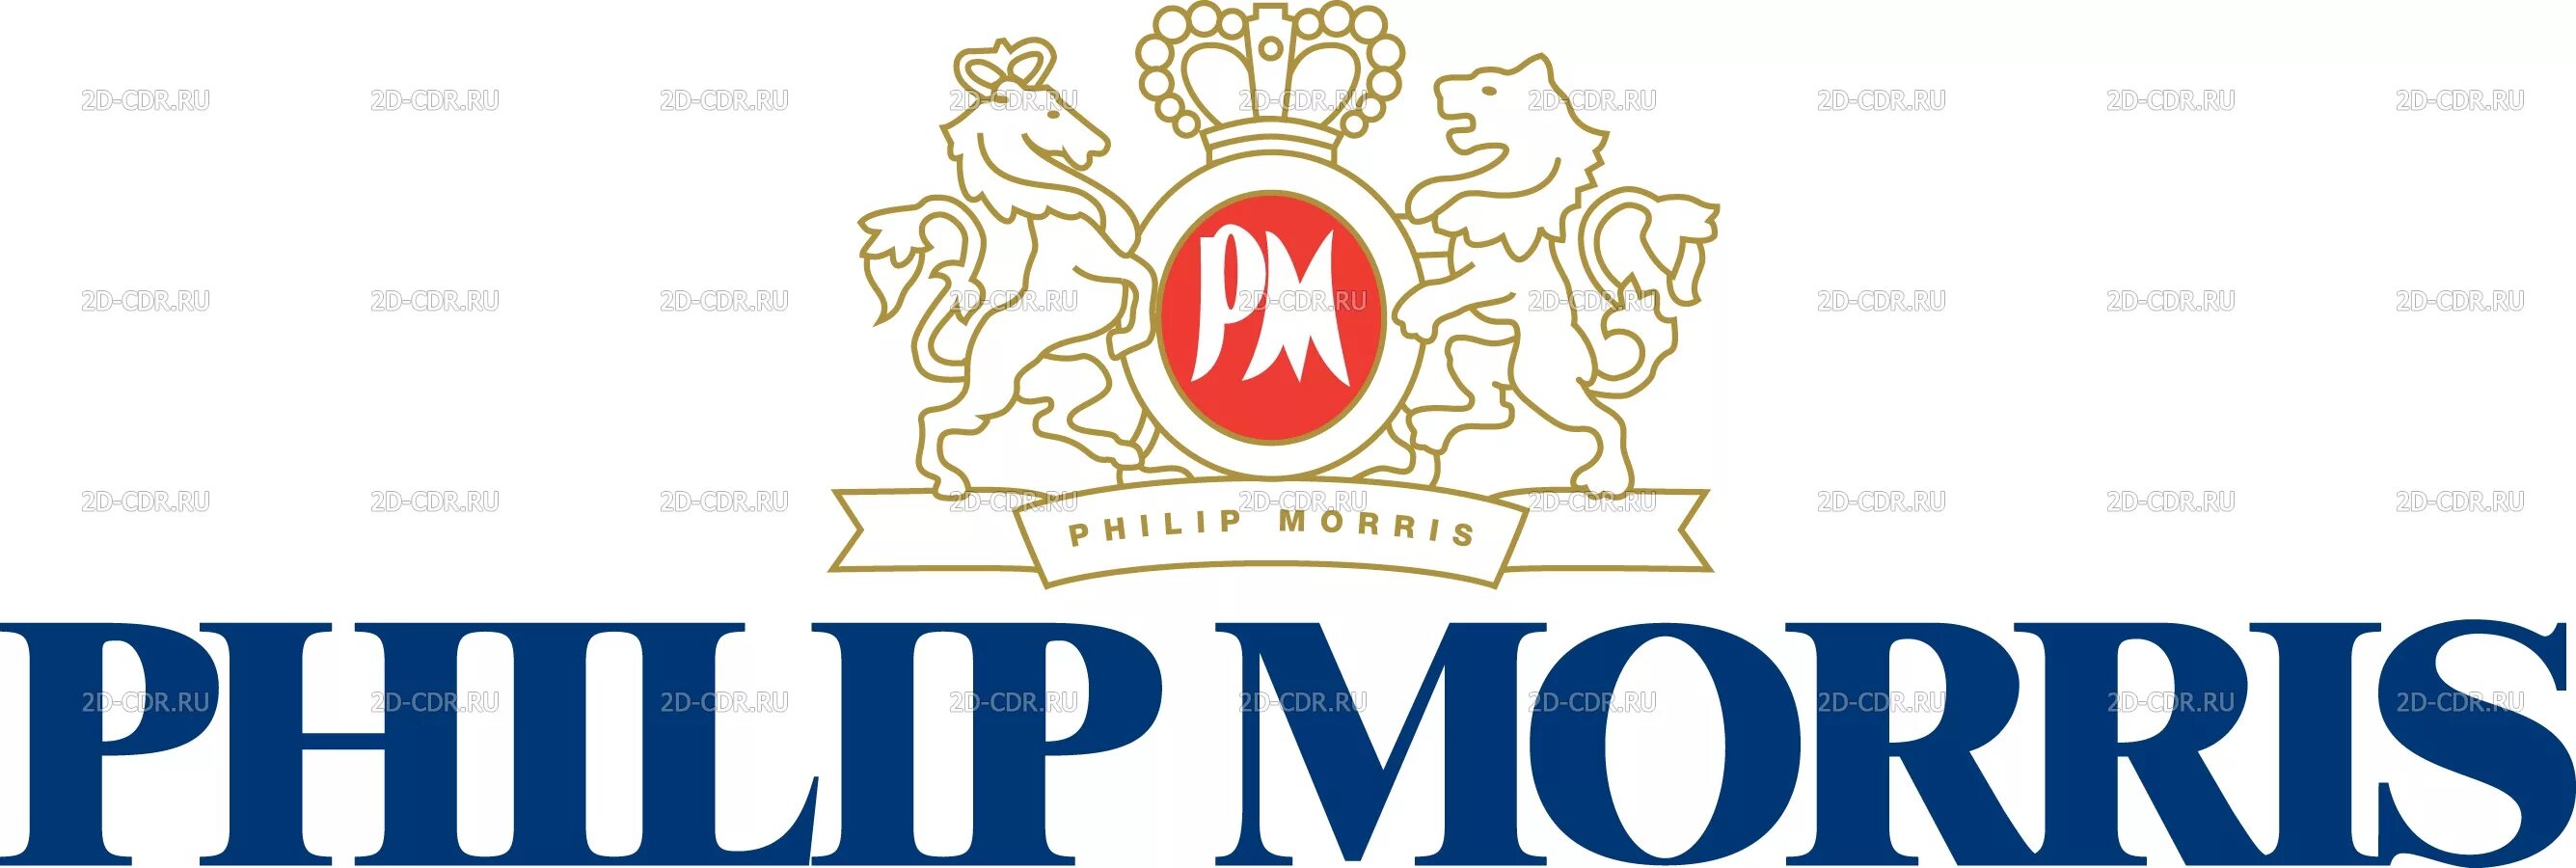 Эмблема Филлип Моррис. Филип Моррис Интернэшнл лого. Табачная компания Филип Моррис. Логотип компании Philip Morris. Сайт филип моррис